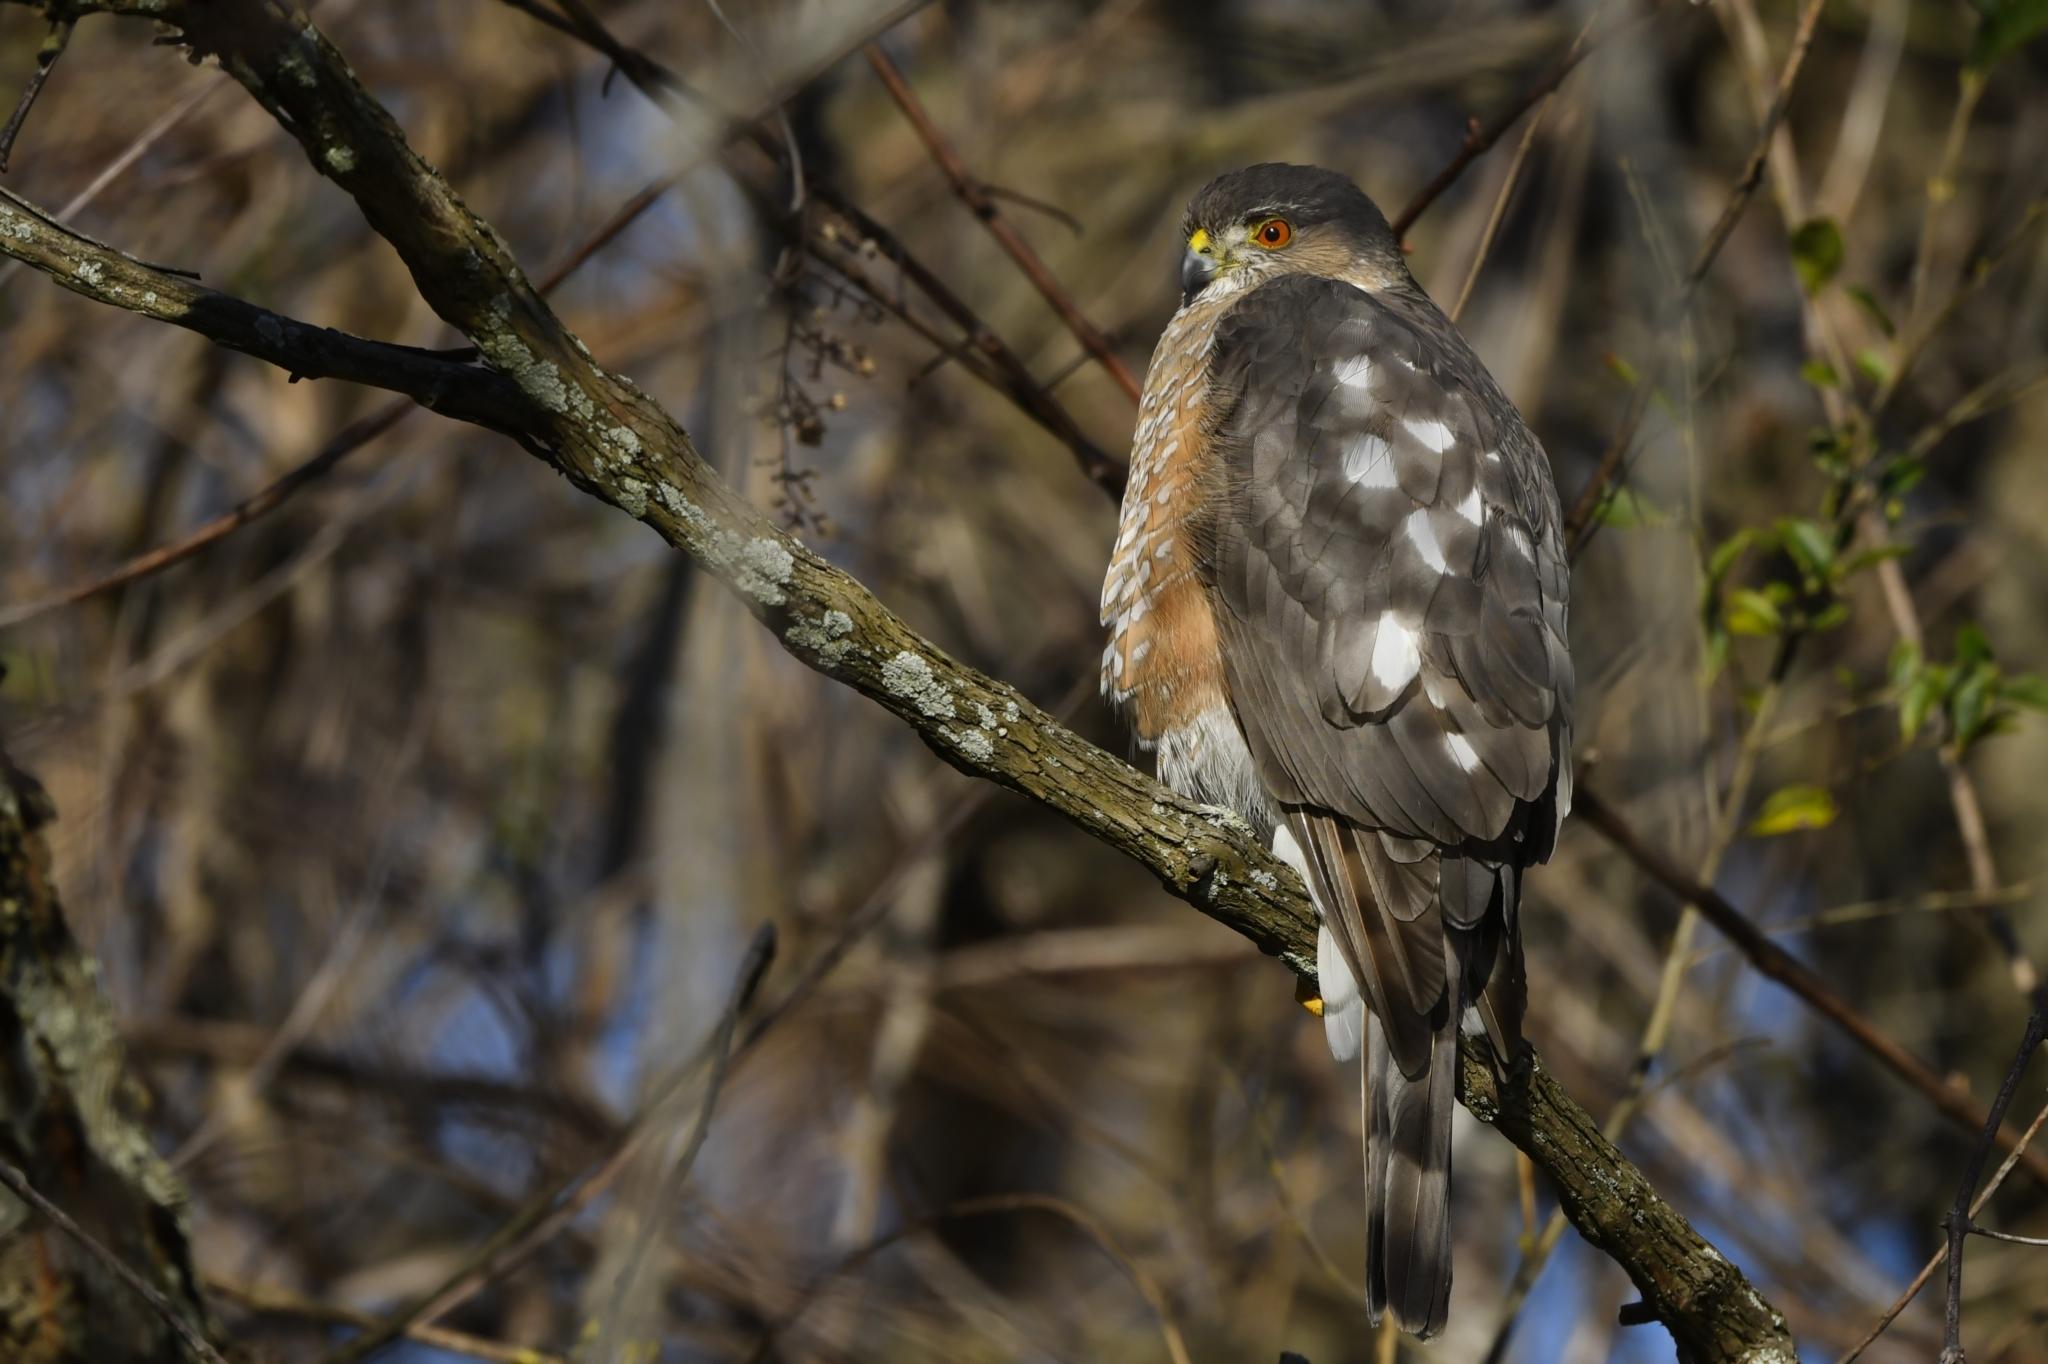 Sharp-shinned hawk. Photo by Jonathon Irons, Maryland Biodiversity Project